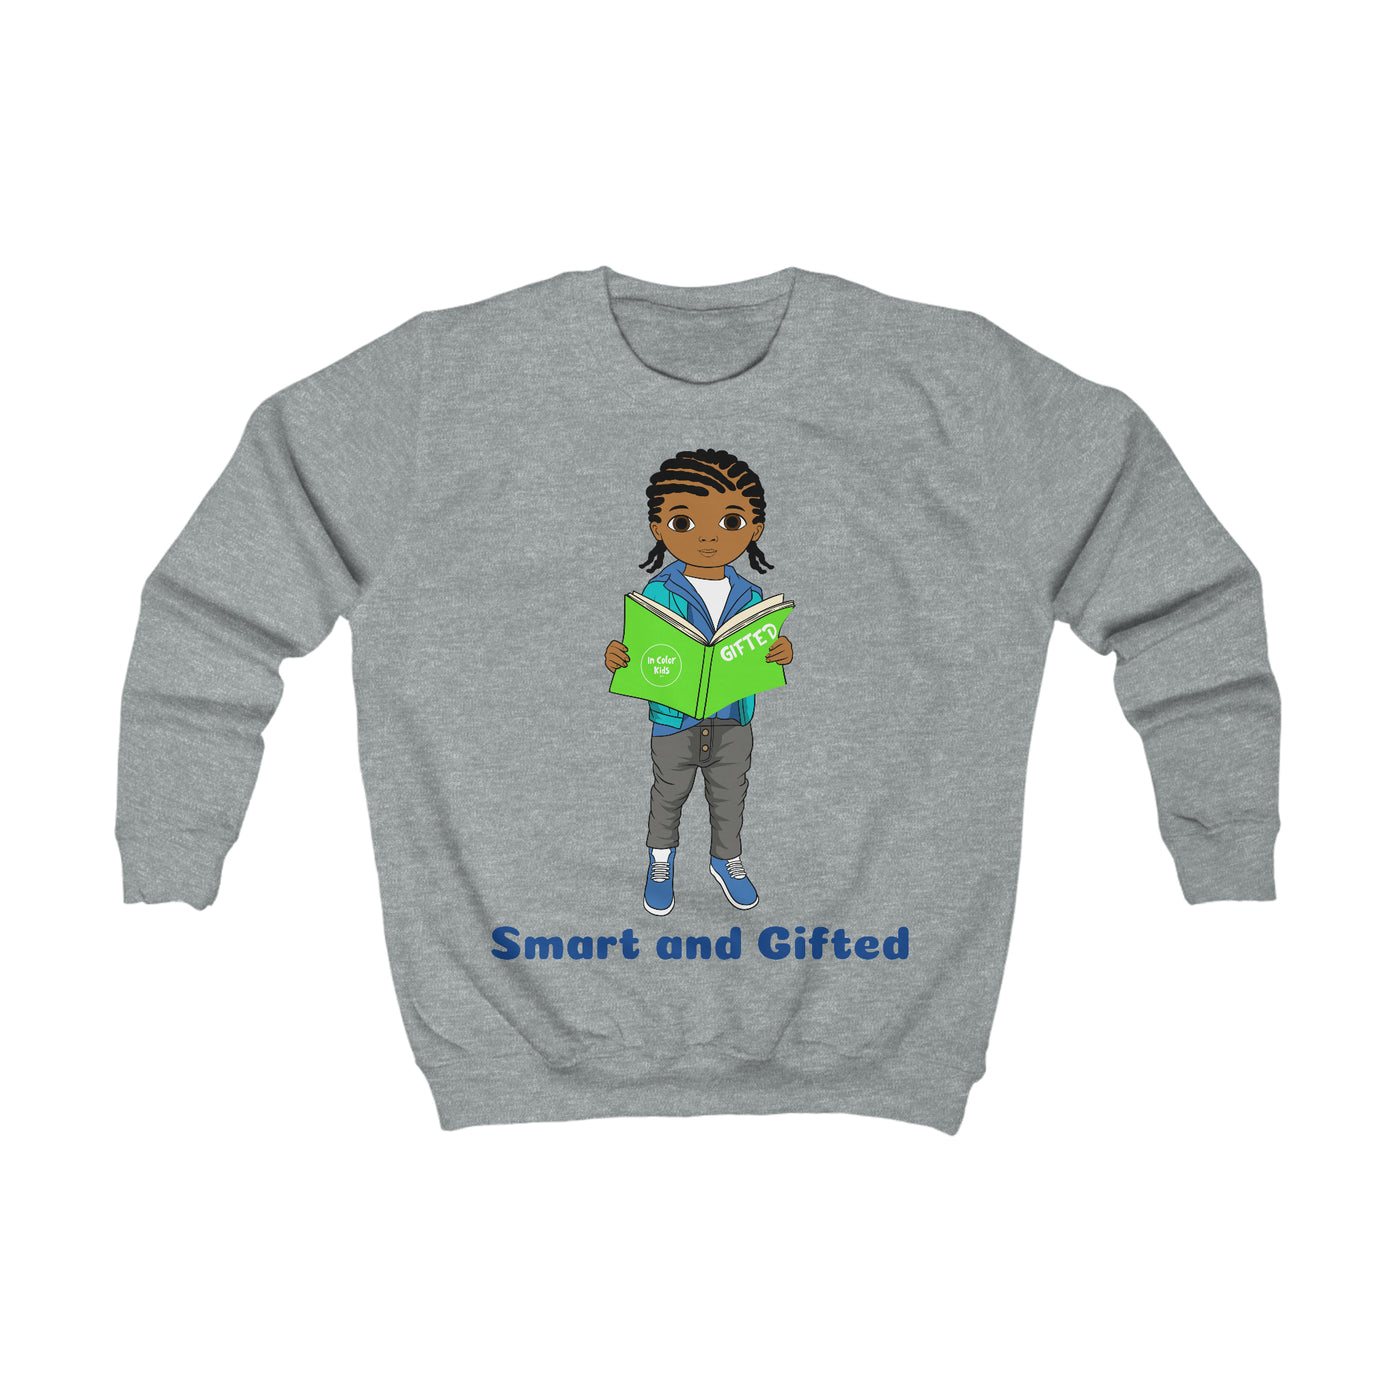 Smart and Gifted Sweatshirt - Caramel